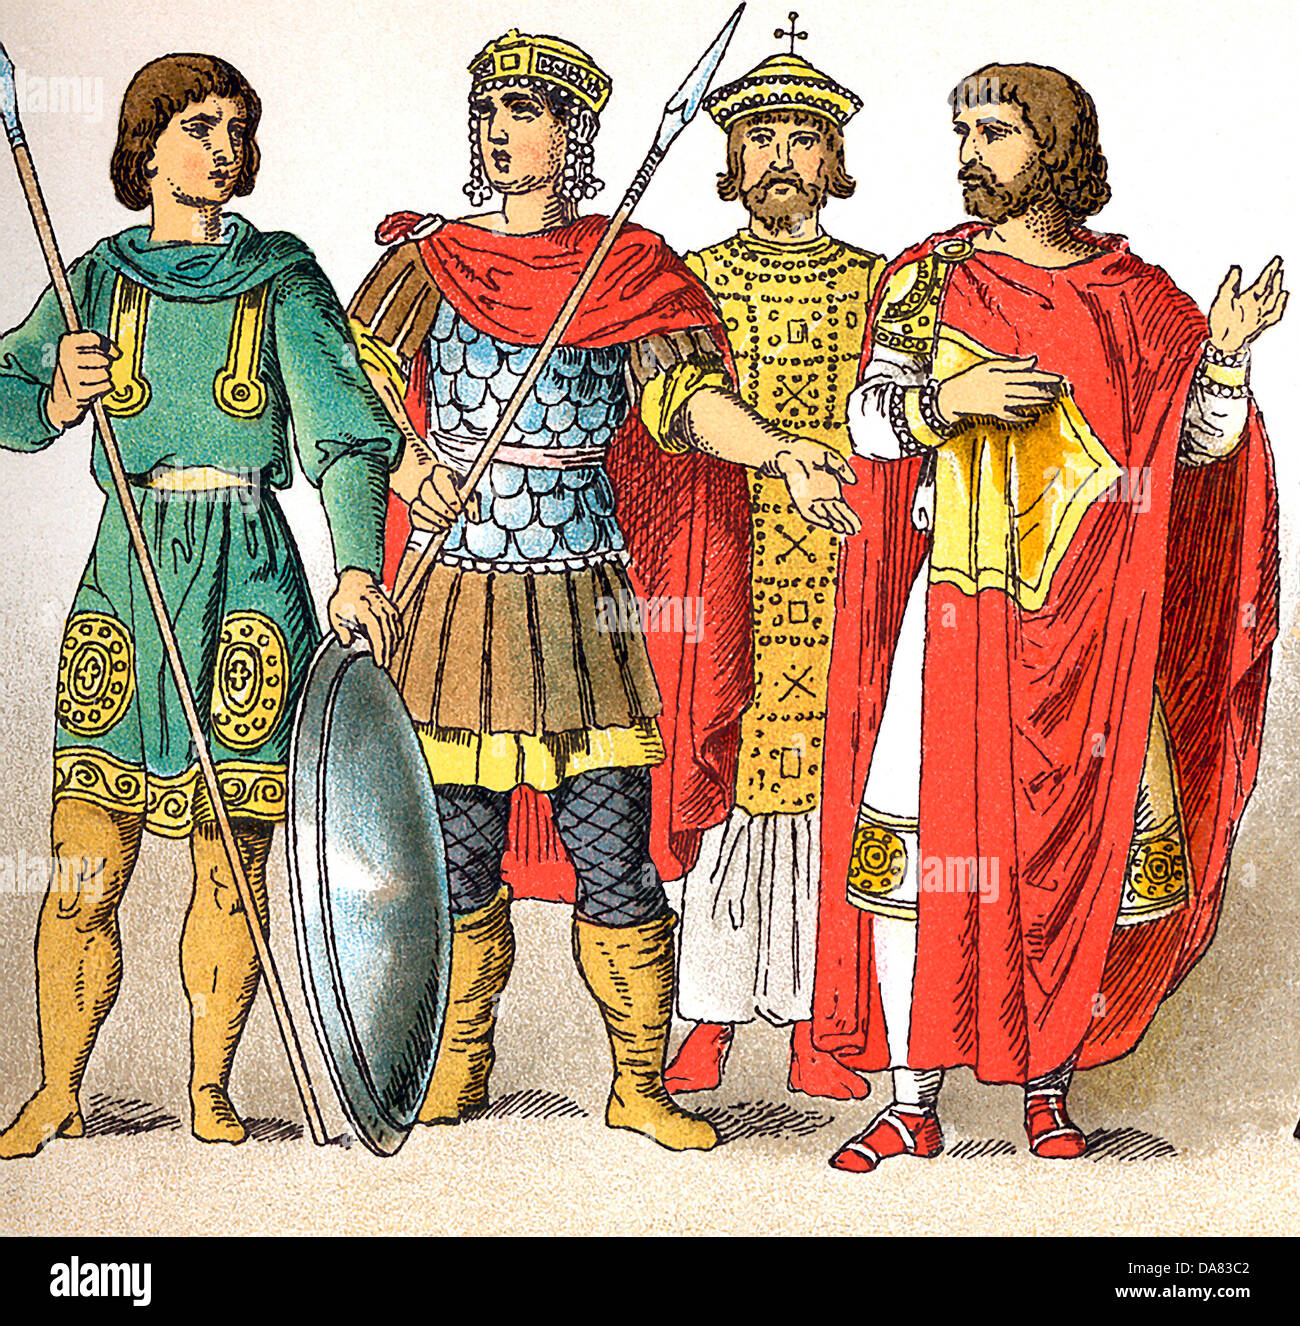 Les chiffres représentent les deux guerriers byzantine (A.D. 800), l'empereur Nicéphore I (A.D. 811), et un homme de noble rang. Banque D'Images